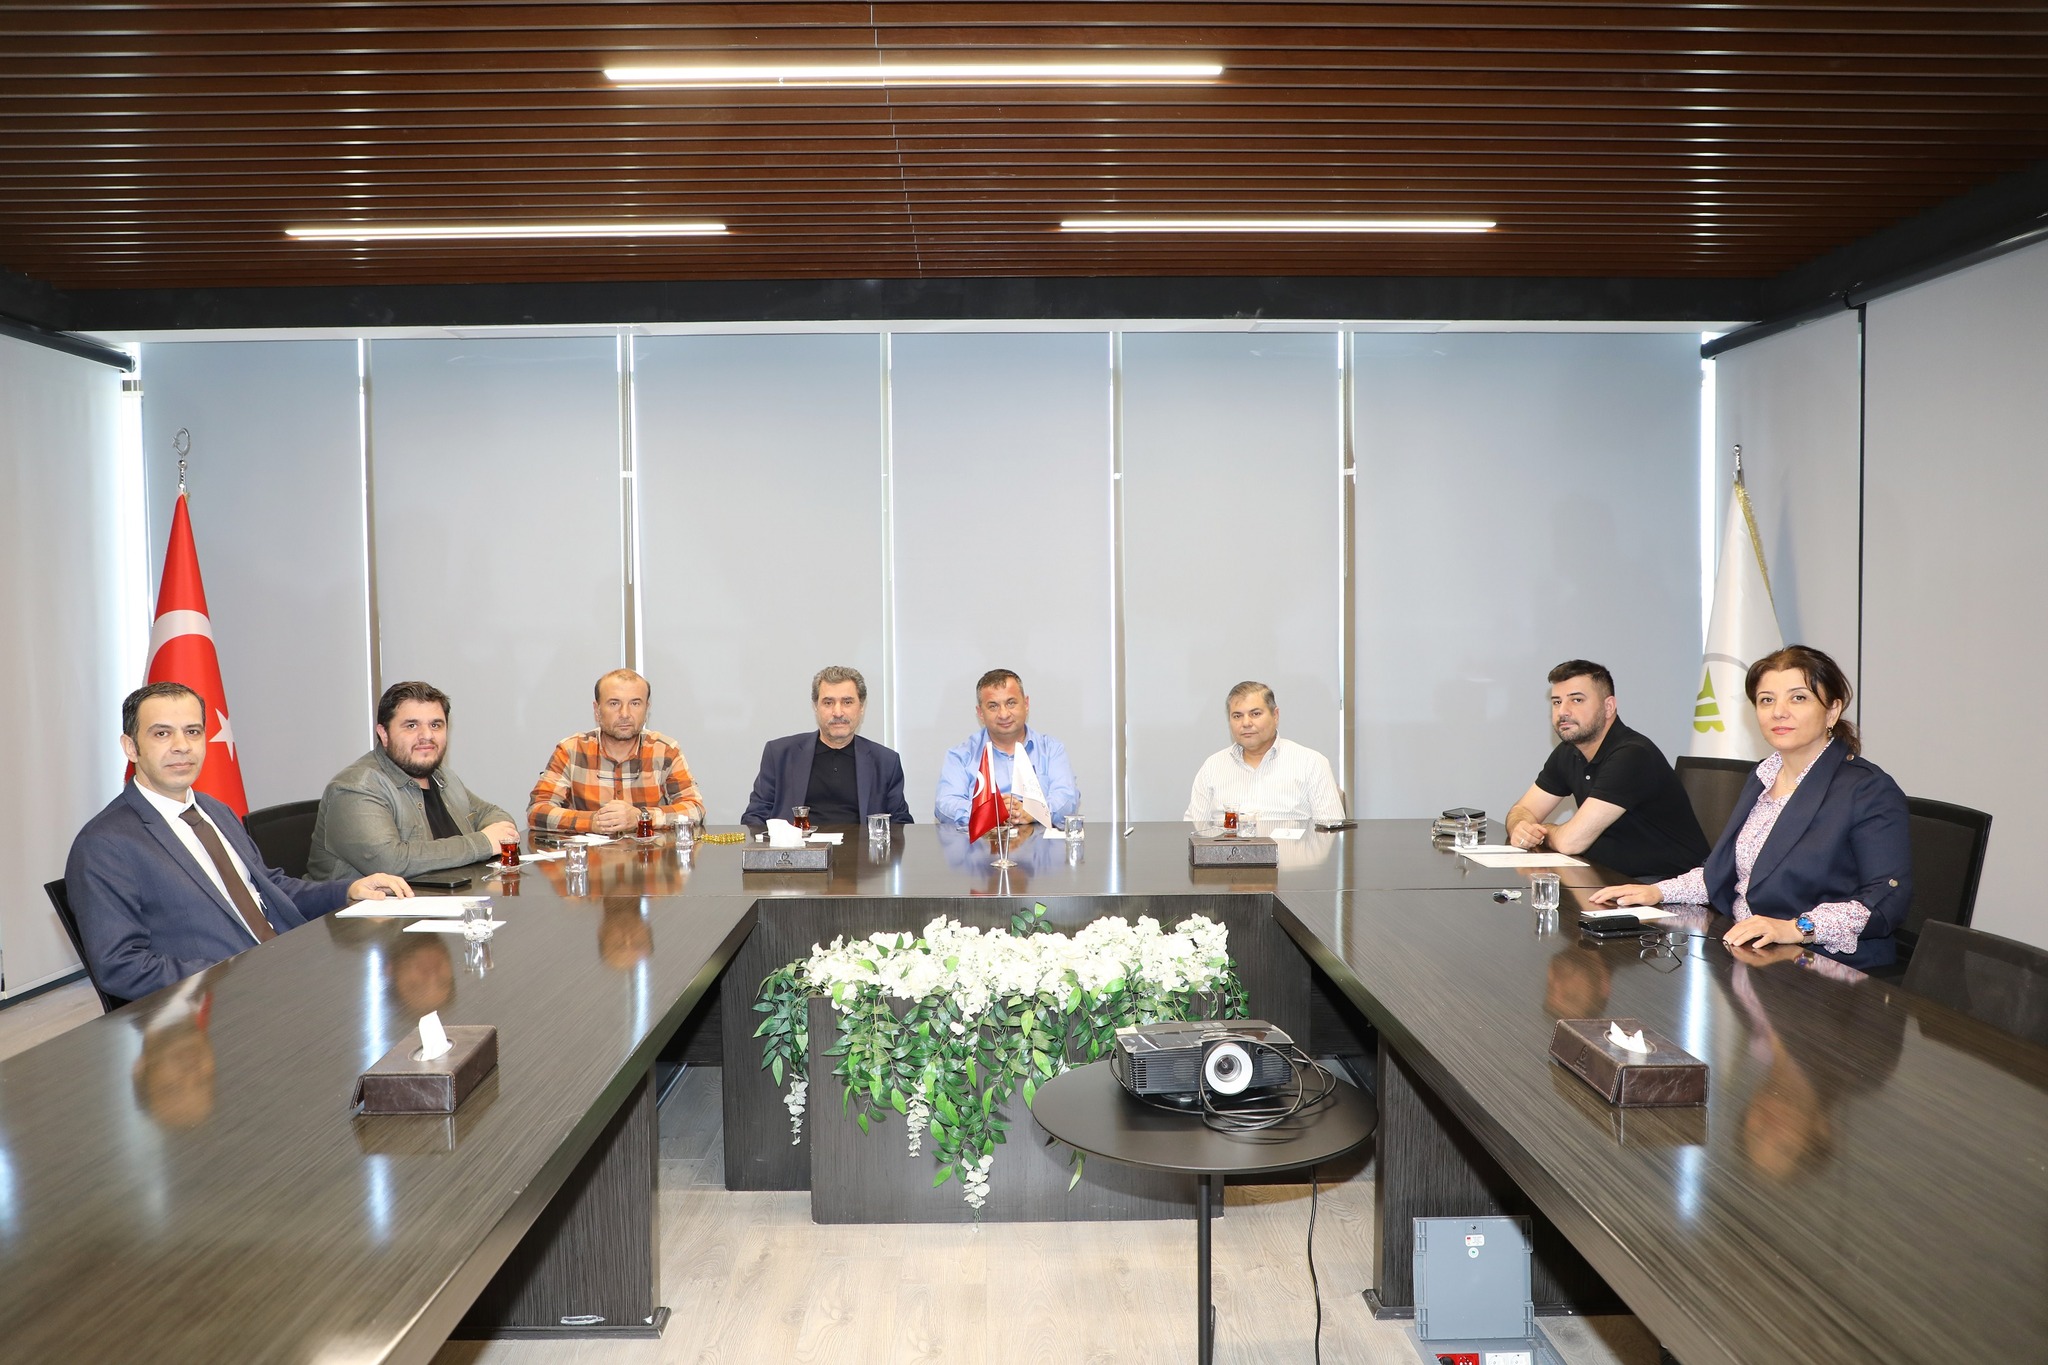 Gaziantep Ticaret Borsası'na bağlı Kavrulmuş ve İşlenmiş Kuruyemiş Toptan Ticareti 7. Meslek Komitesi Toplantısı